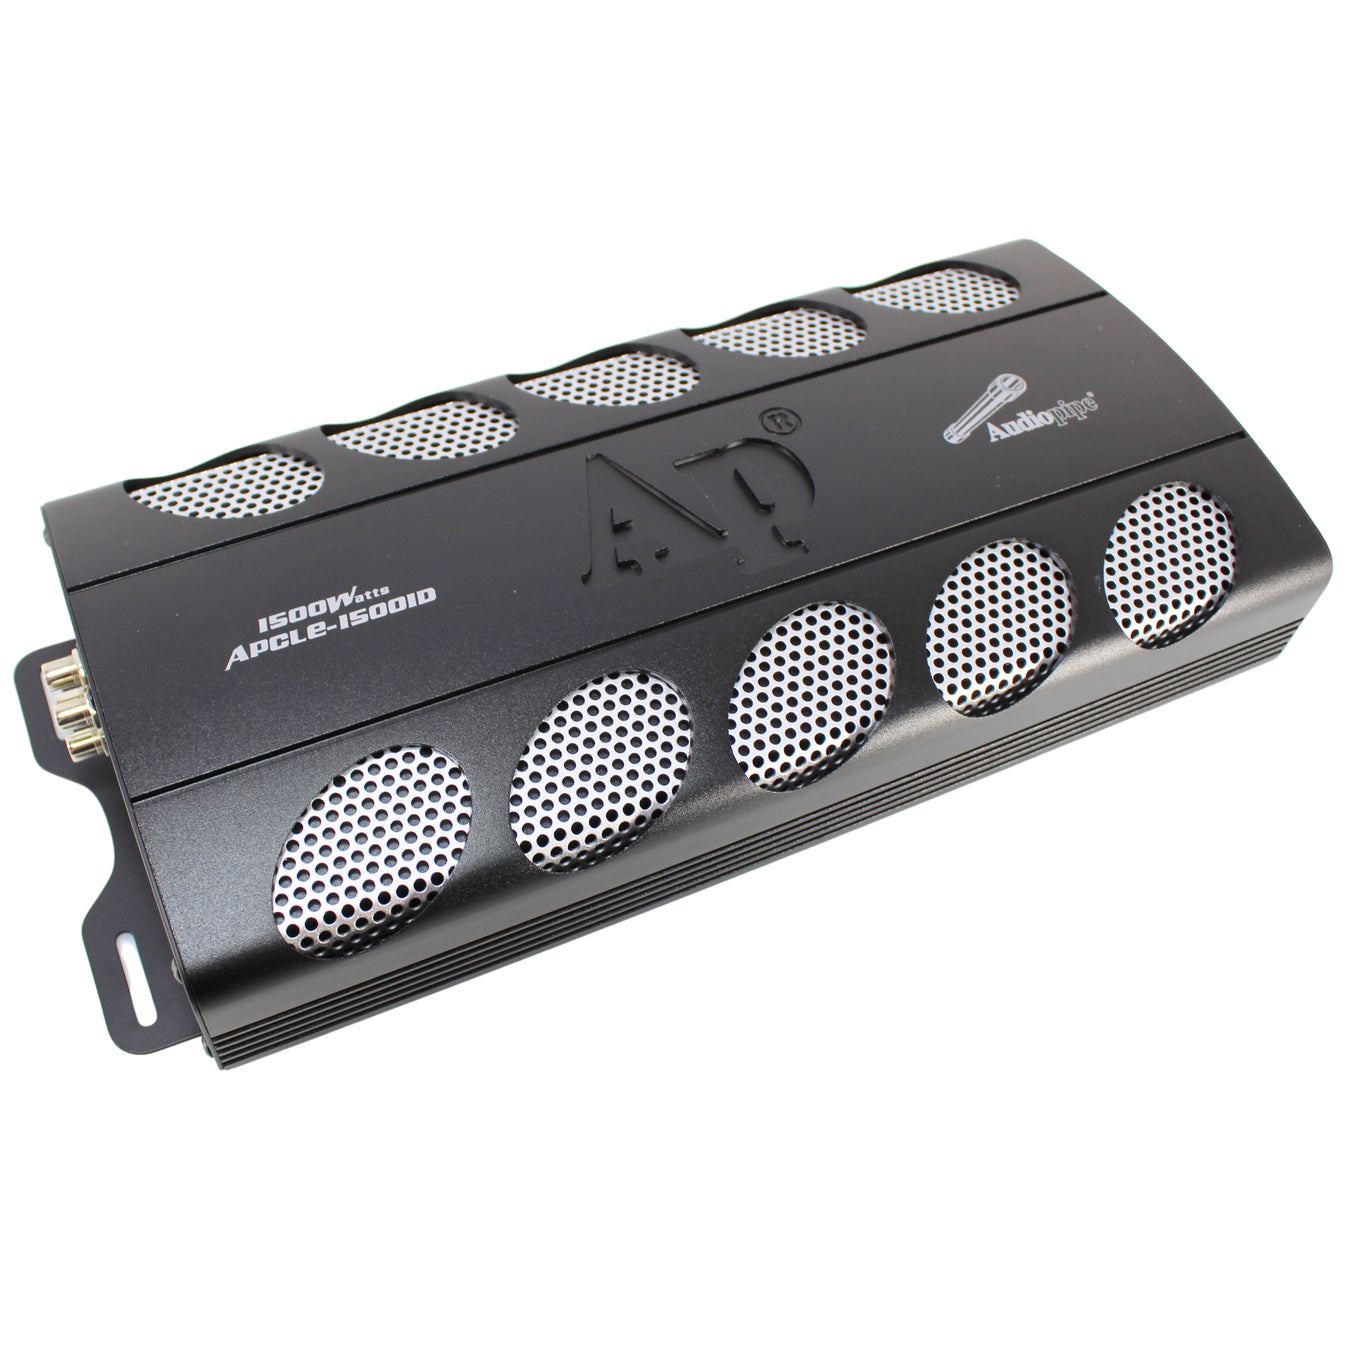 Audiopipe Amplifiers